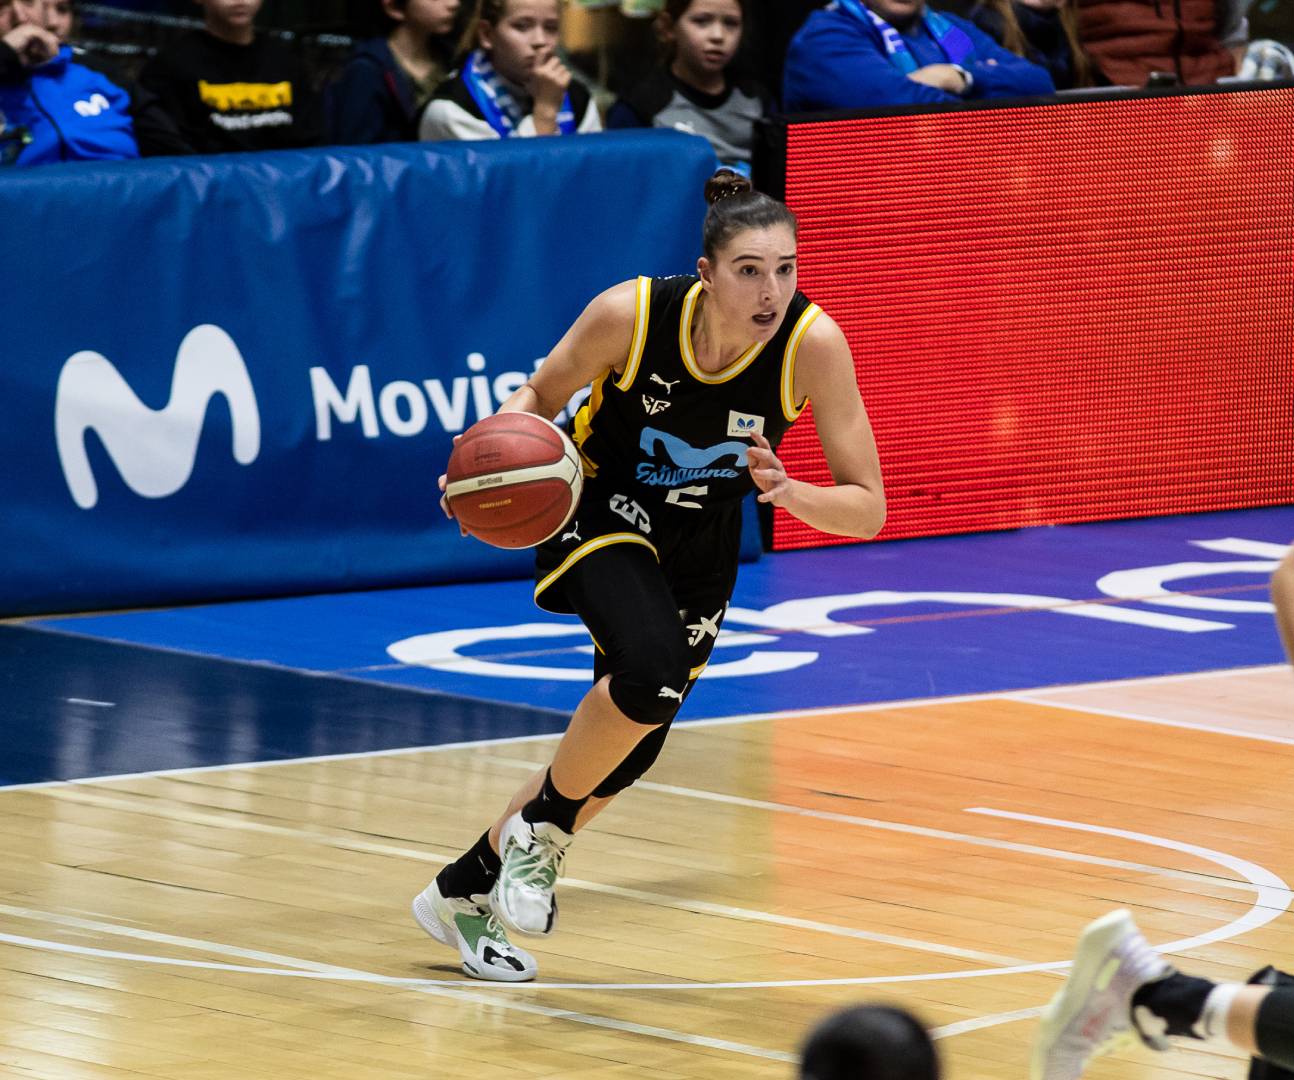 María Eraunzetamurgil, convocada con la selección española